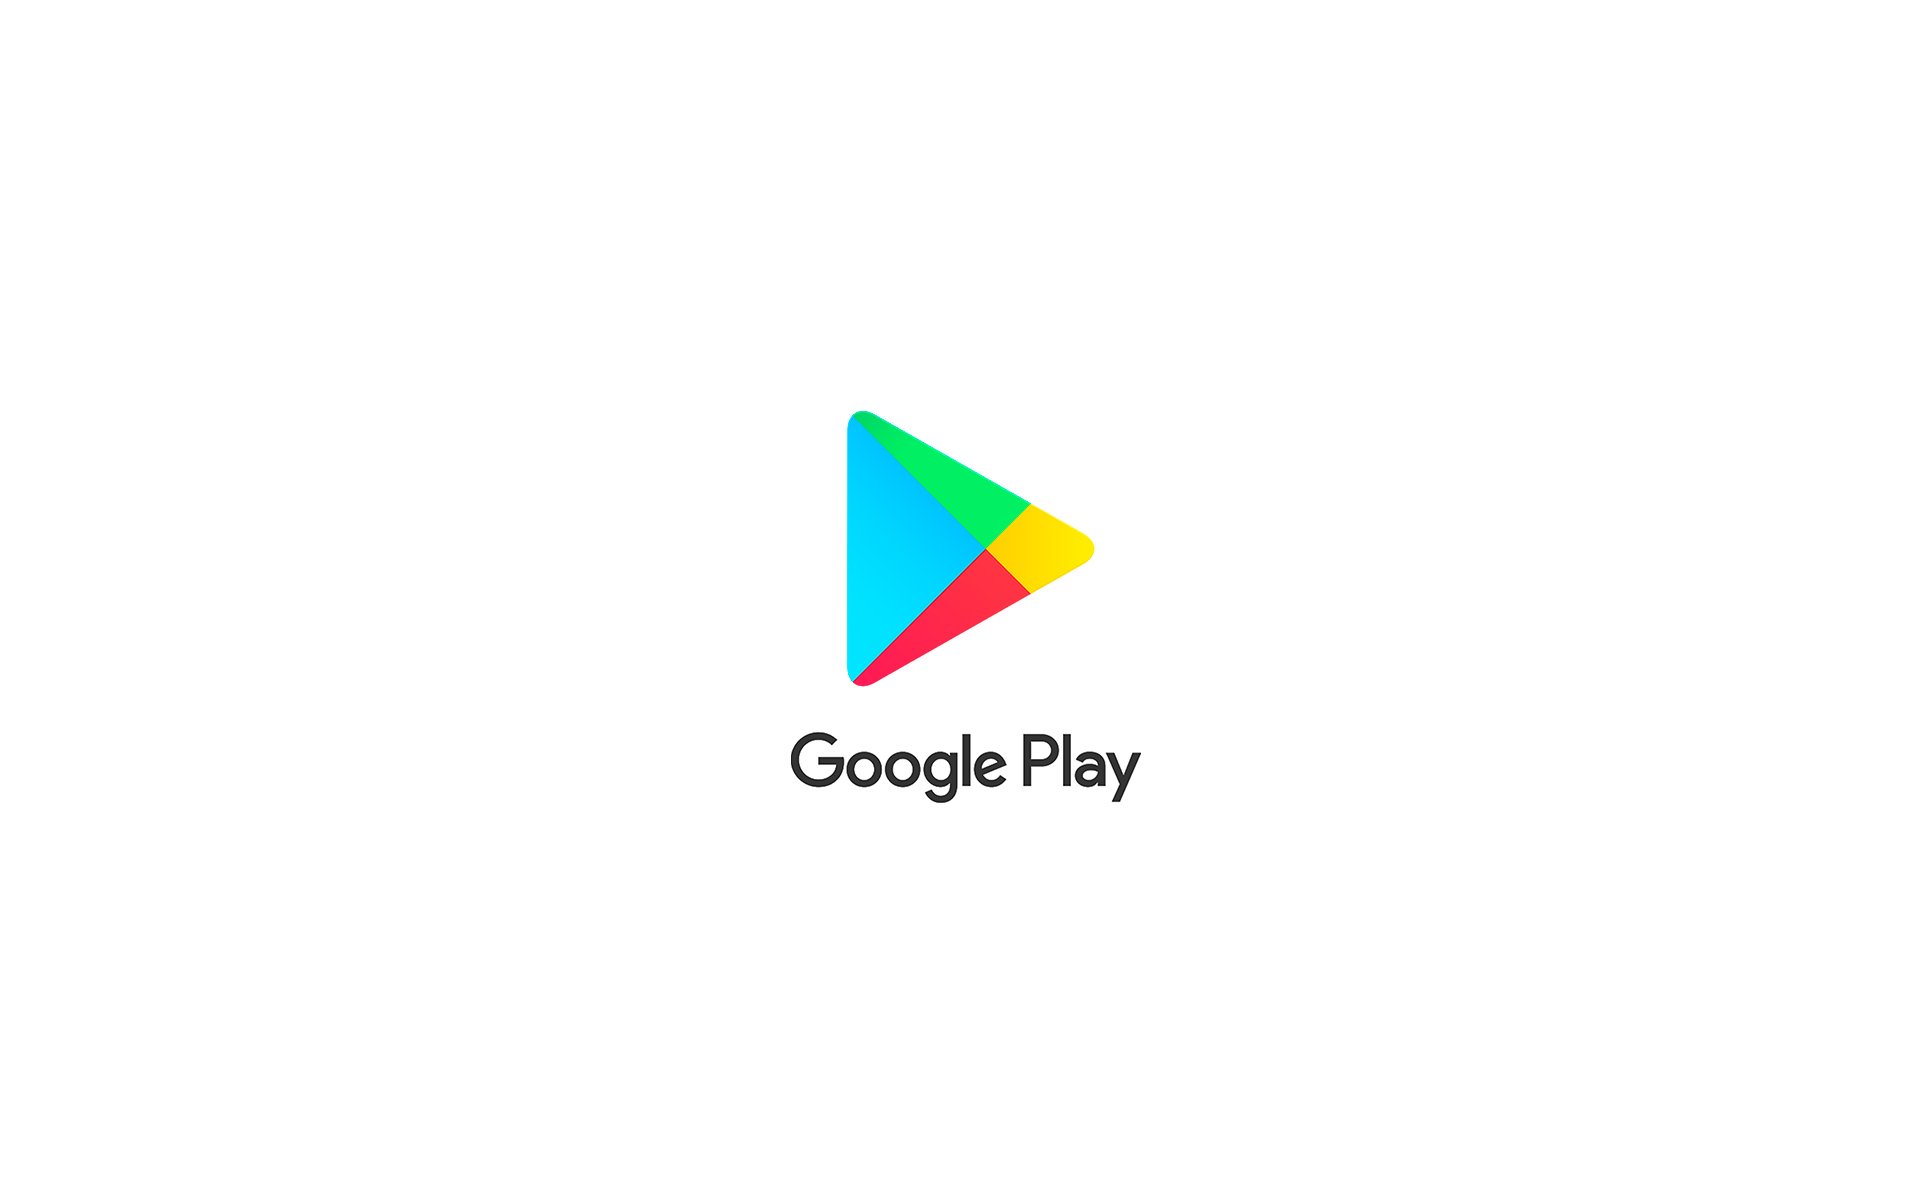 Recargas Google Play, Jogos e Música - Agilidade e Segurança - Pague Seguro  - Correspondente Bancário